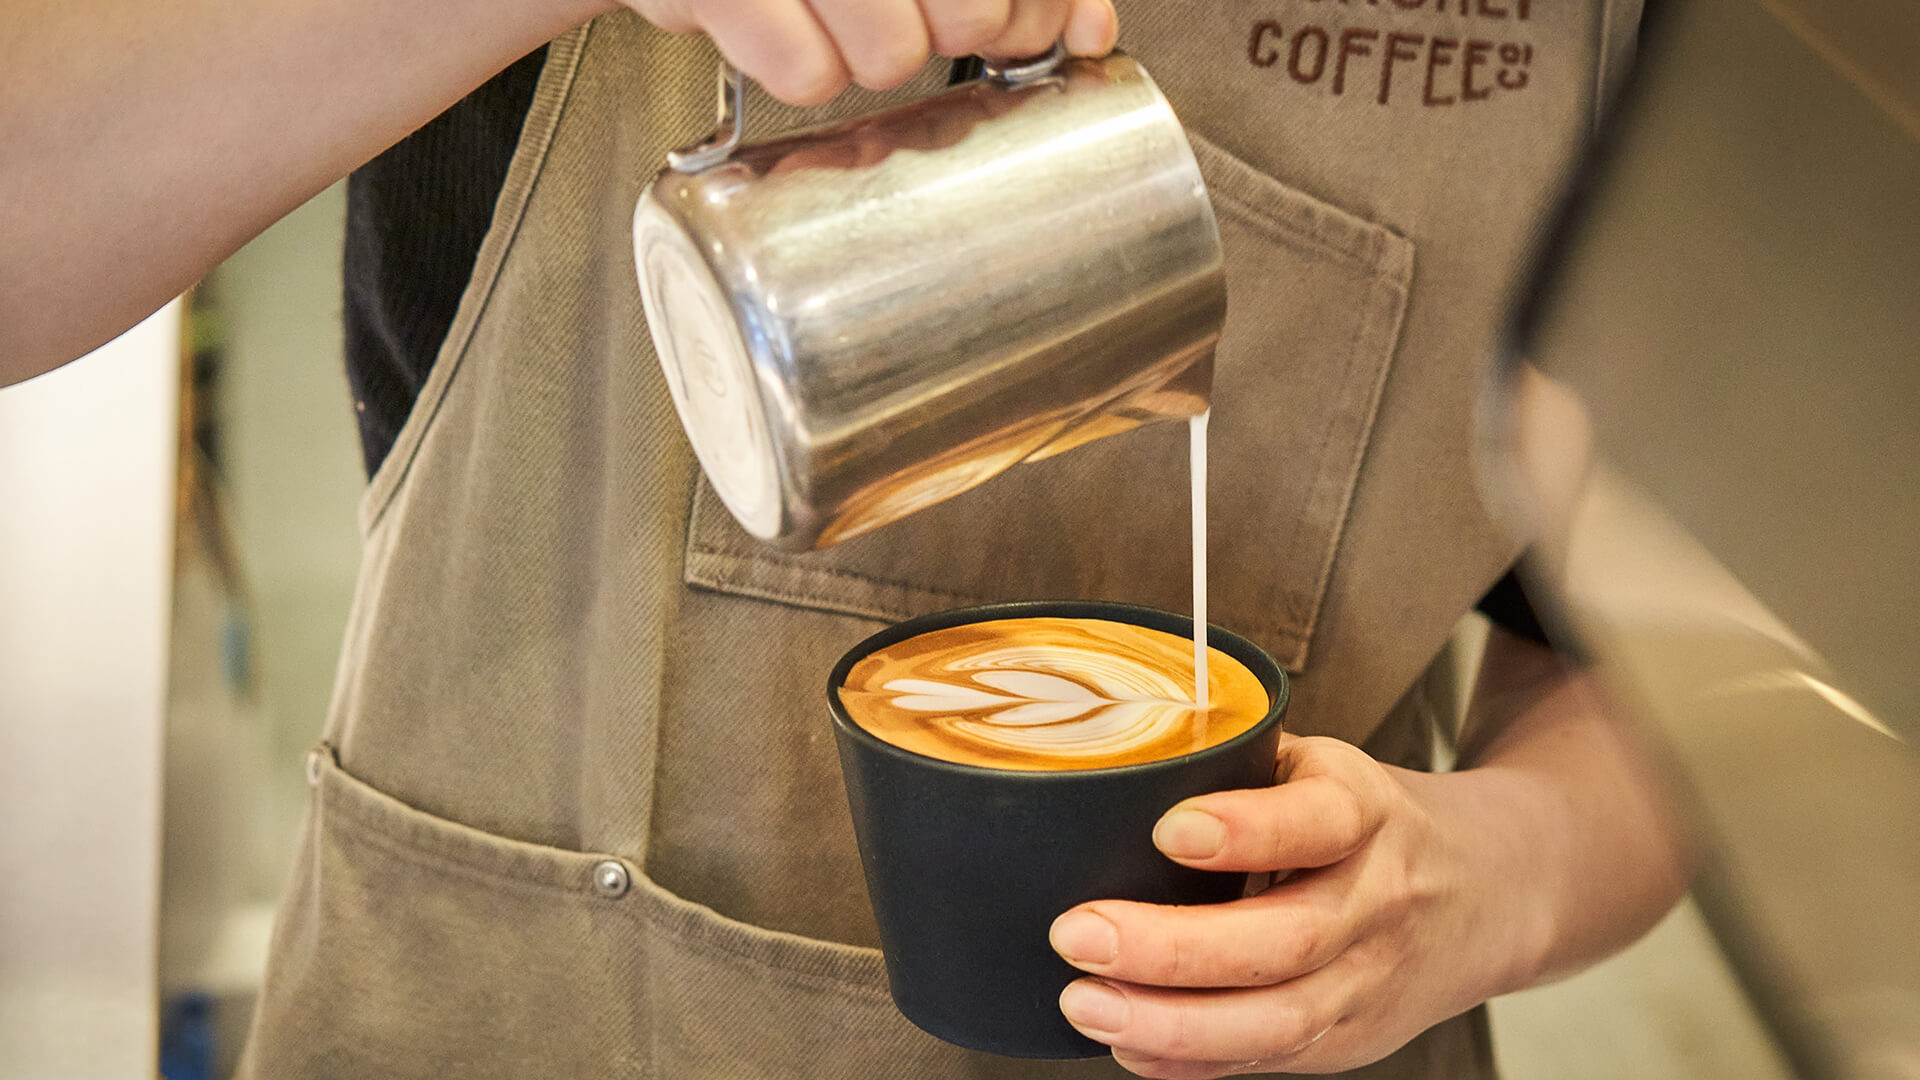 ROKUMEI COFFEE CO.は貴店をサポート致します